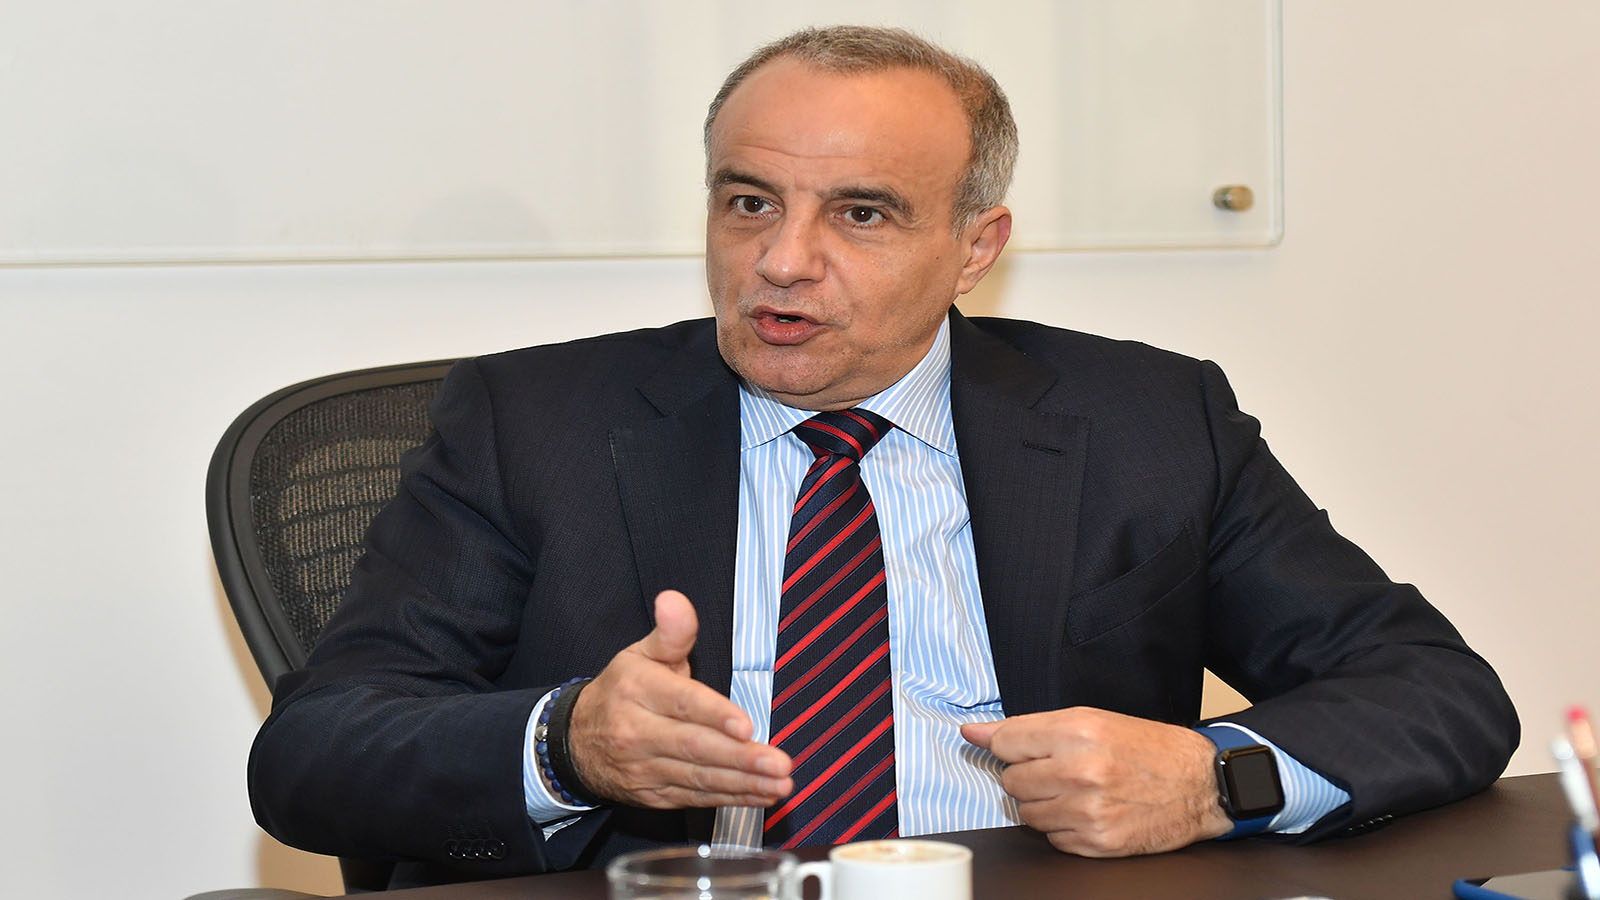 مدير عام "أوجيرو" عماد كريدية يصارح "المدن": لا للخصخصة